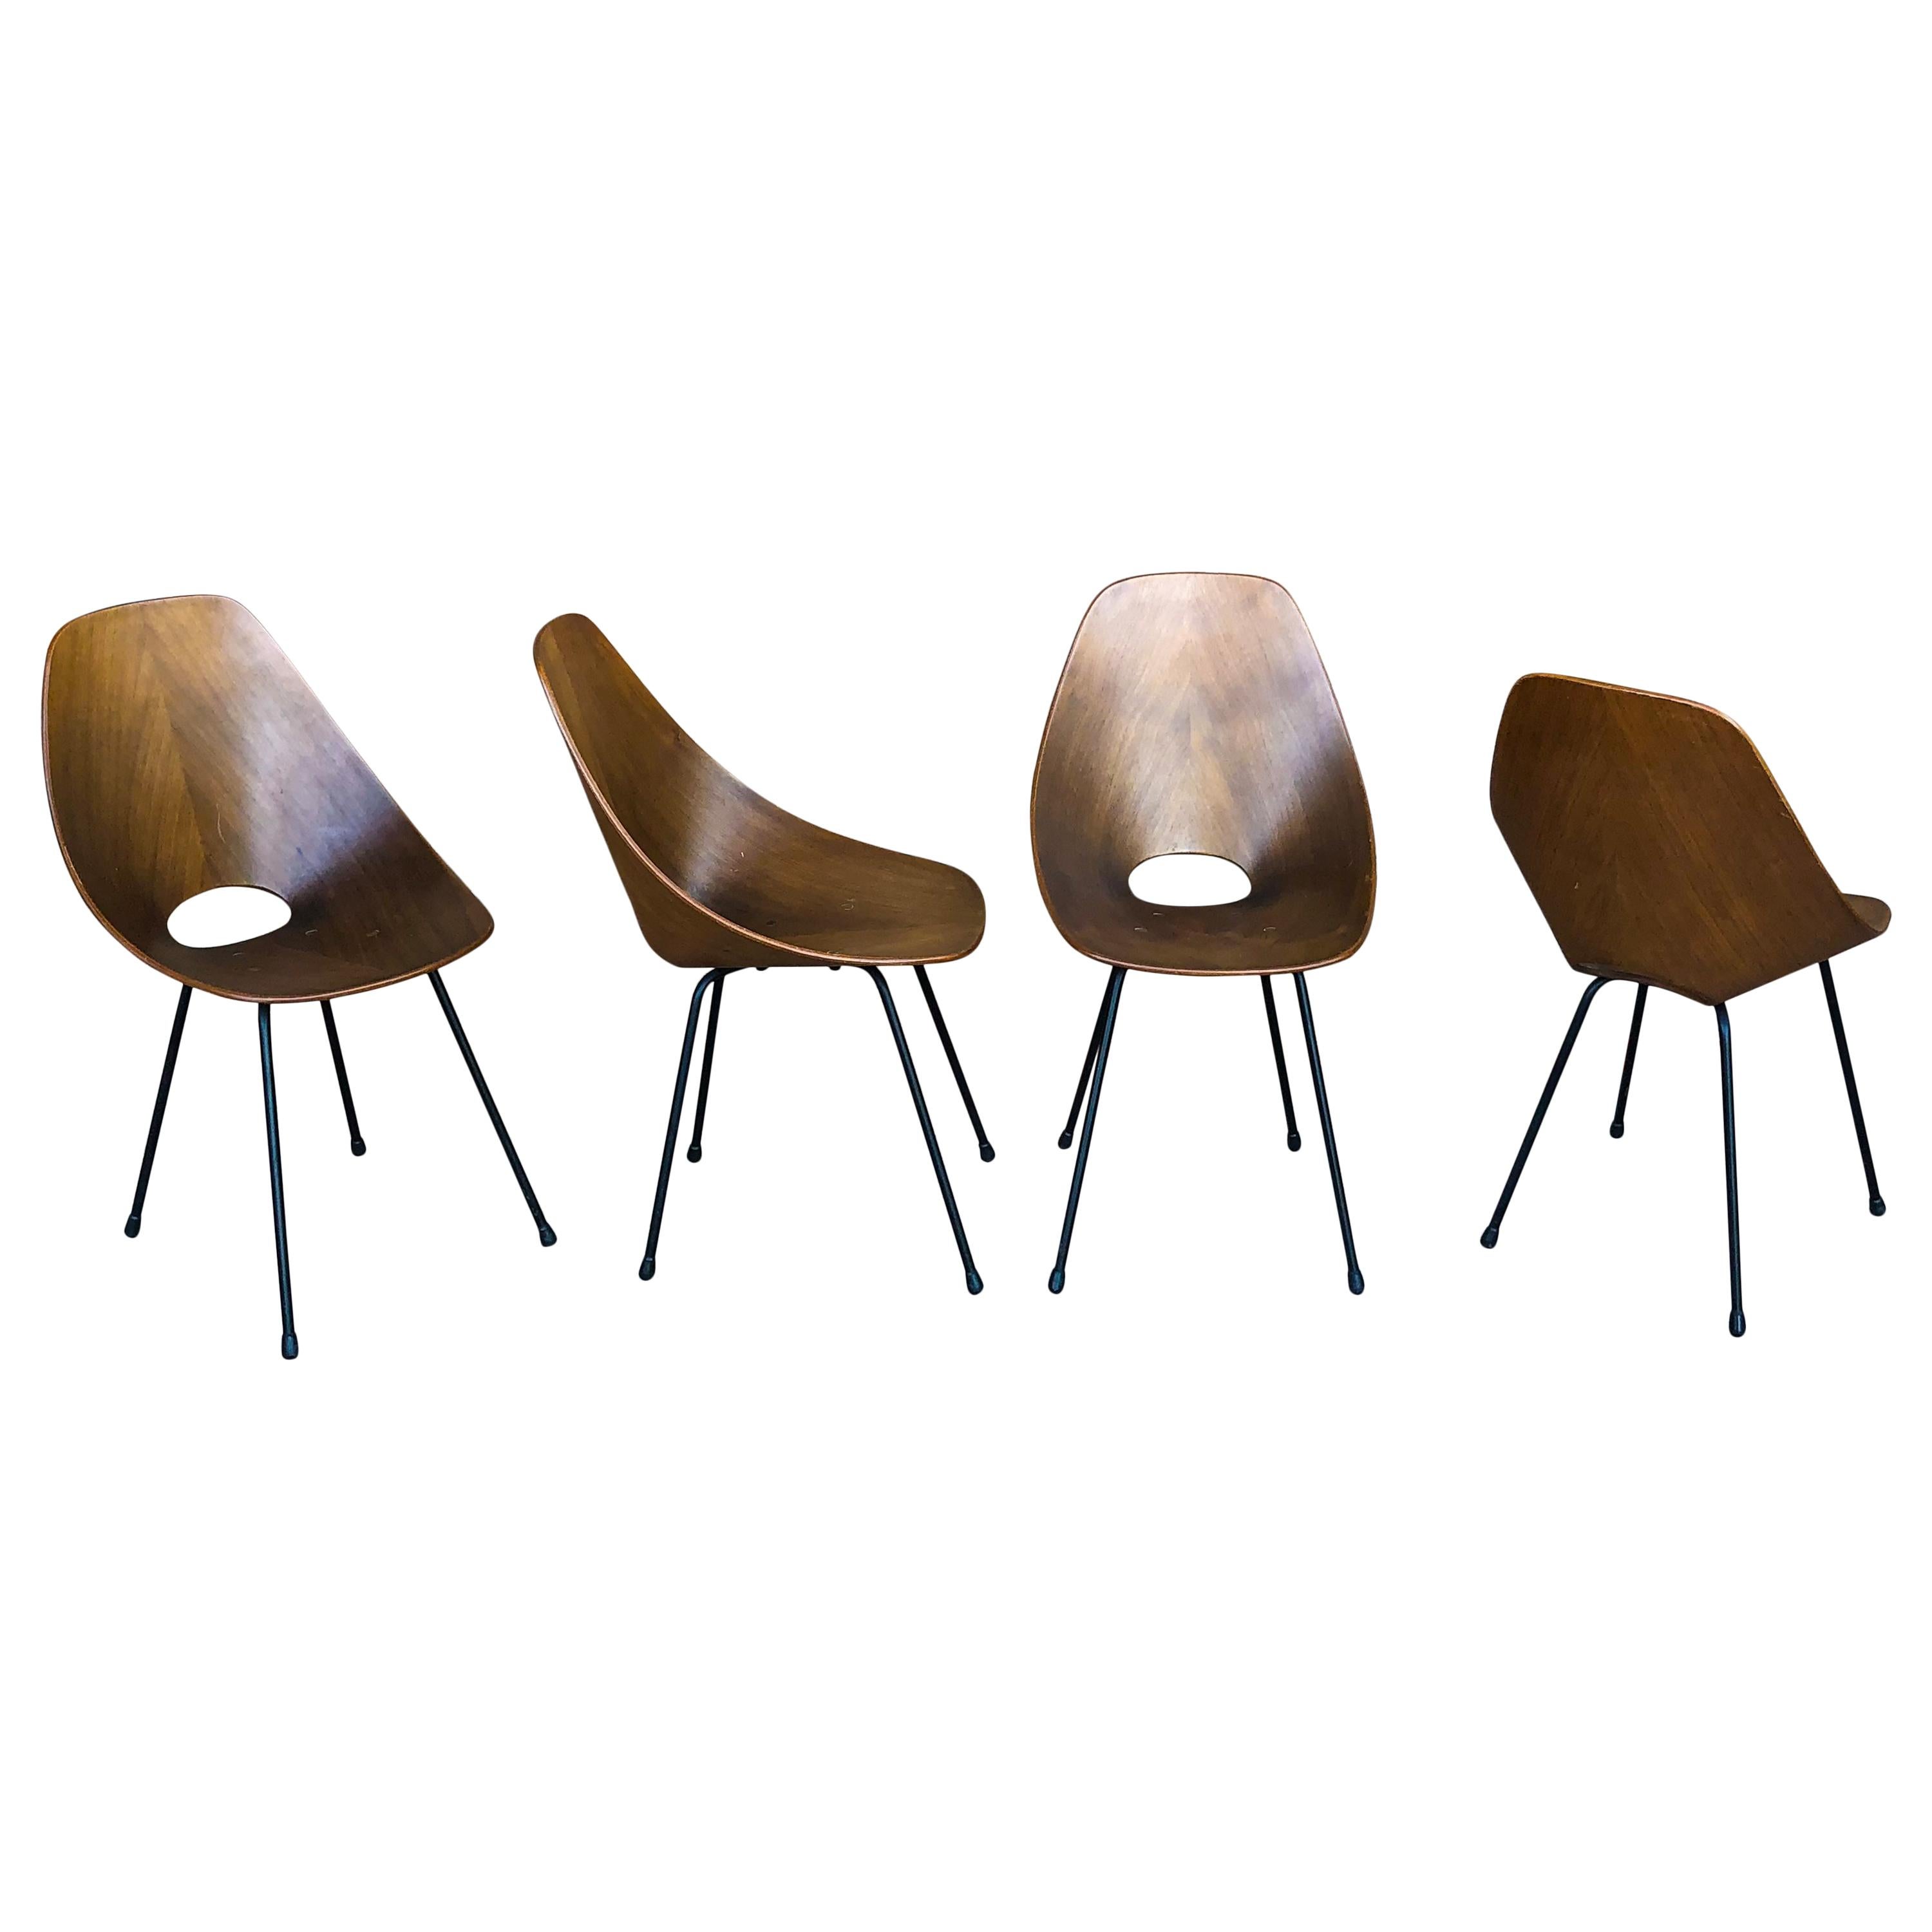 Ensemble composé de quatre chaises de salle à manger Medea, conçues par Vittorio Nobilis pour Fratelli Tagliabue en 1954.

Fabriqué en contreplaqué de teck, excellent état vintage.

Signalé au 